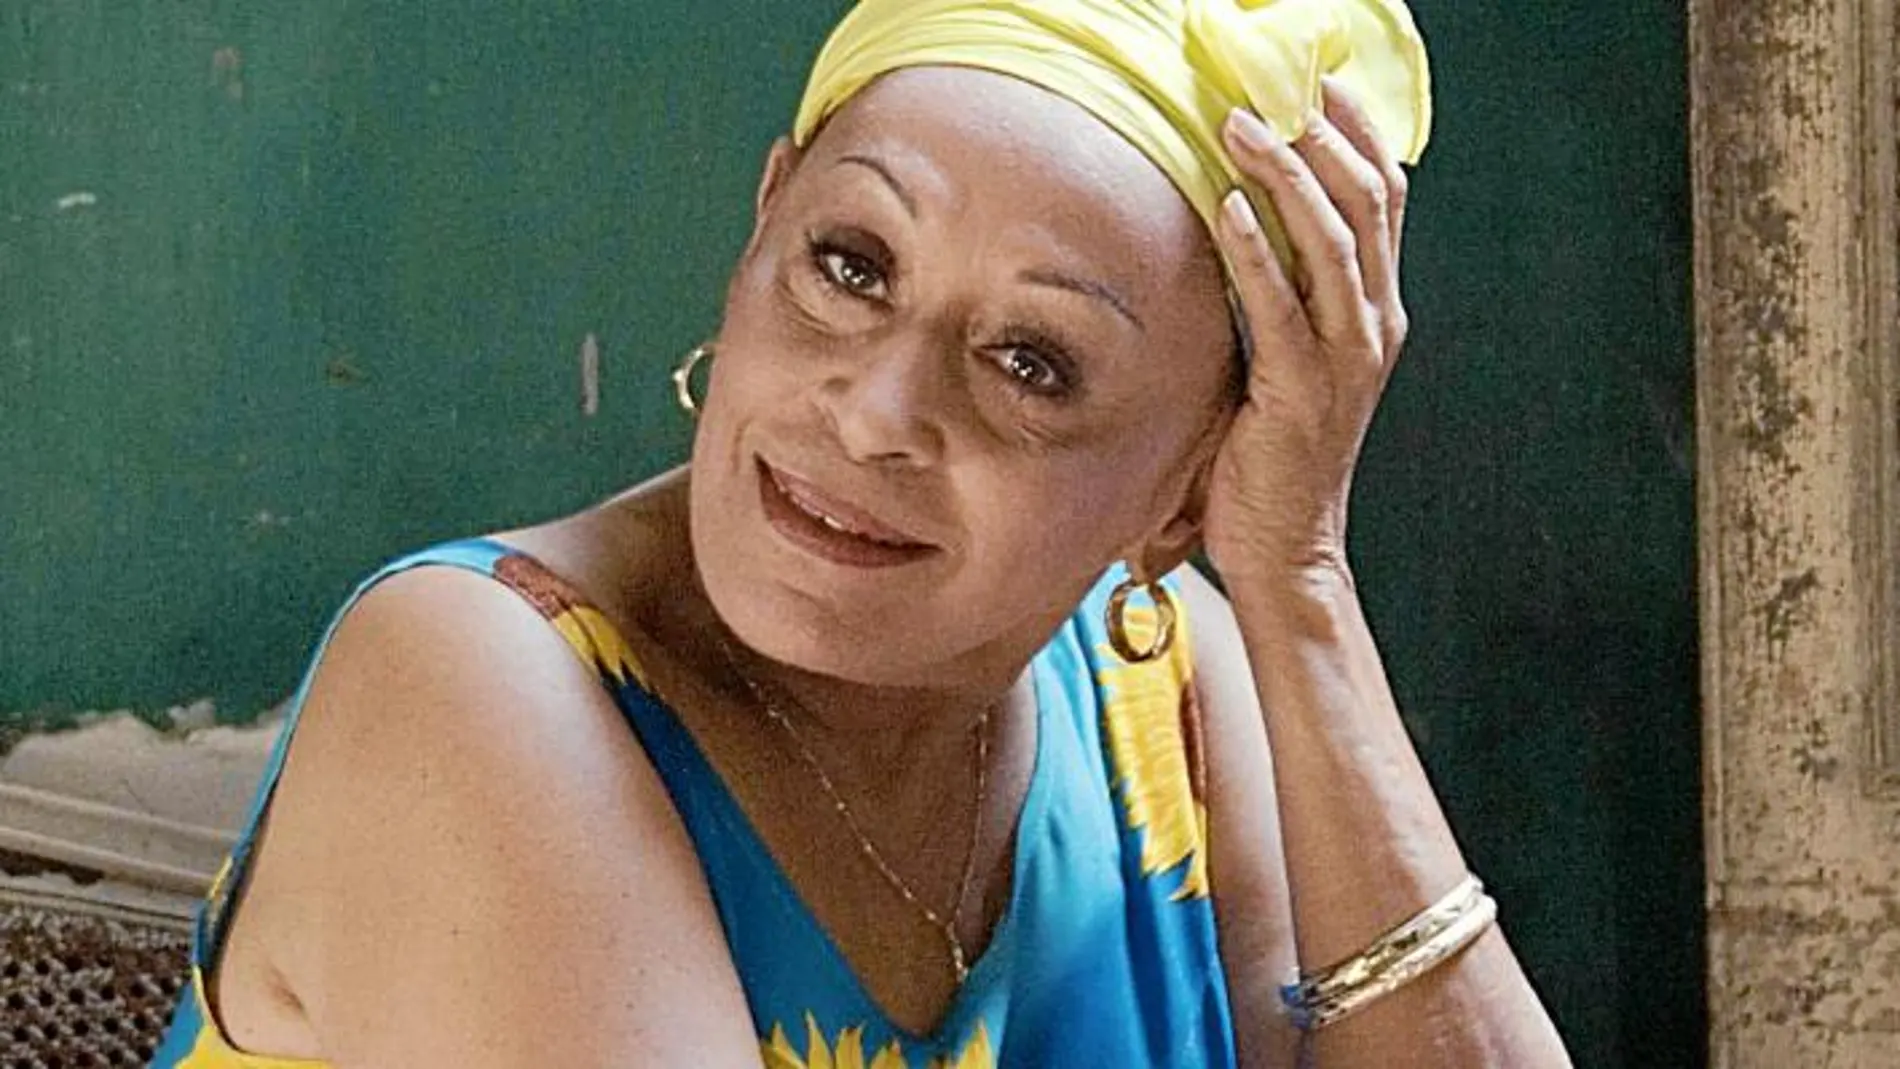 Omara Portuondo nació en La Habana en 1930